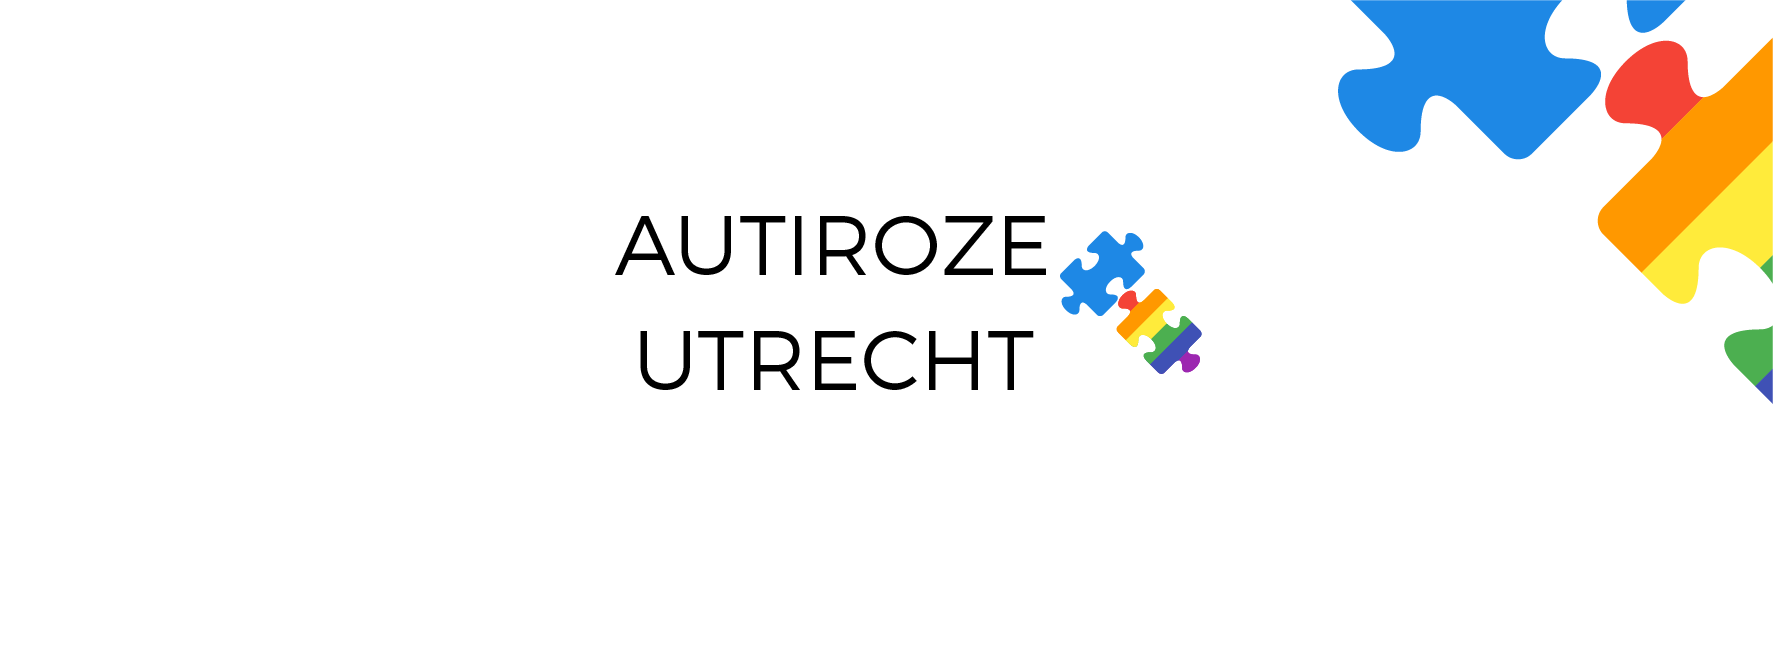 Autiroze Utrecht